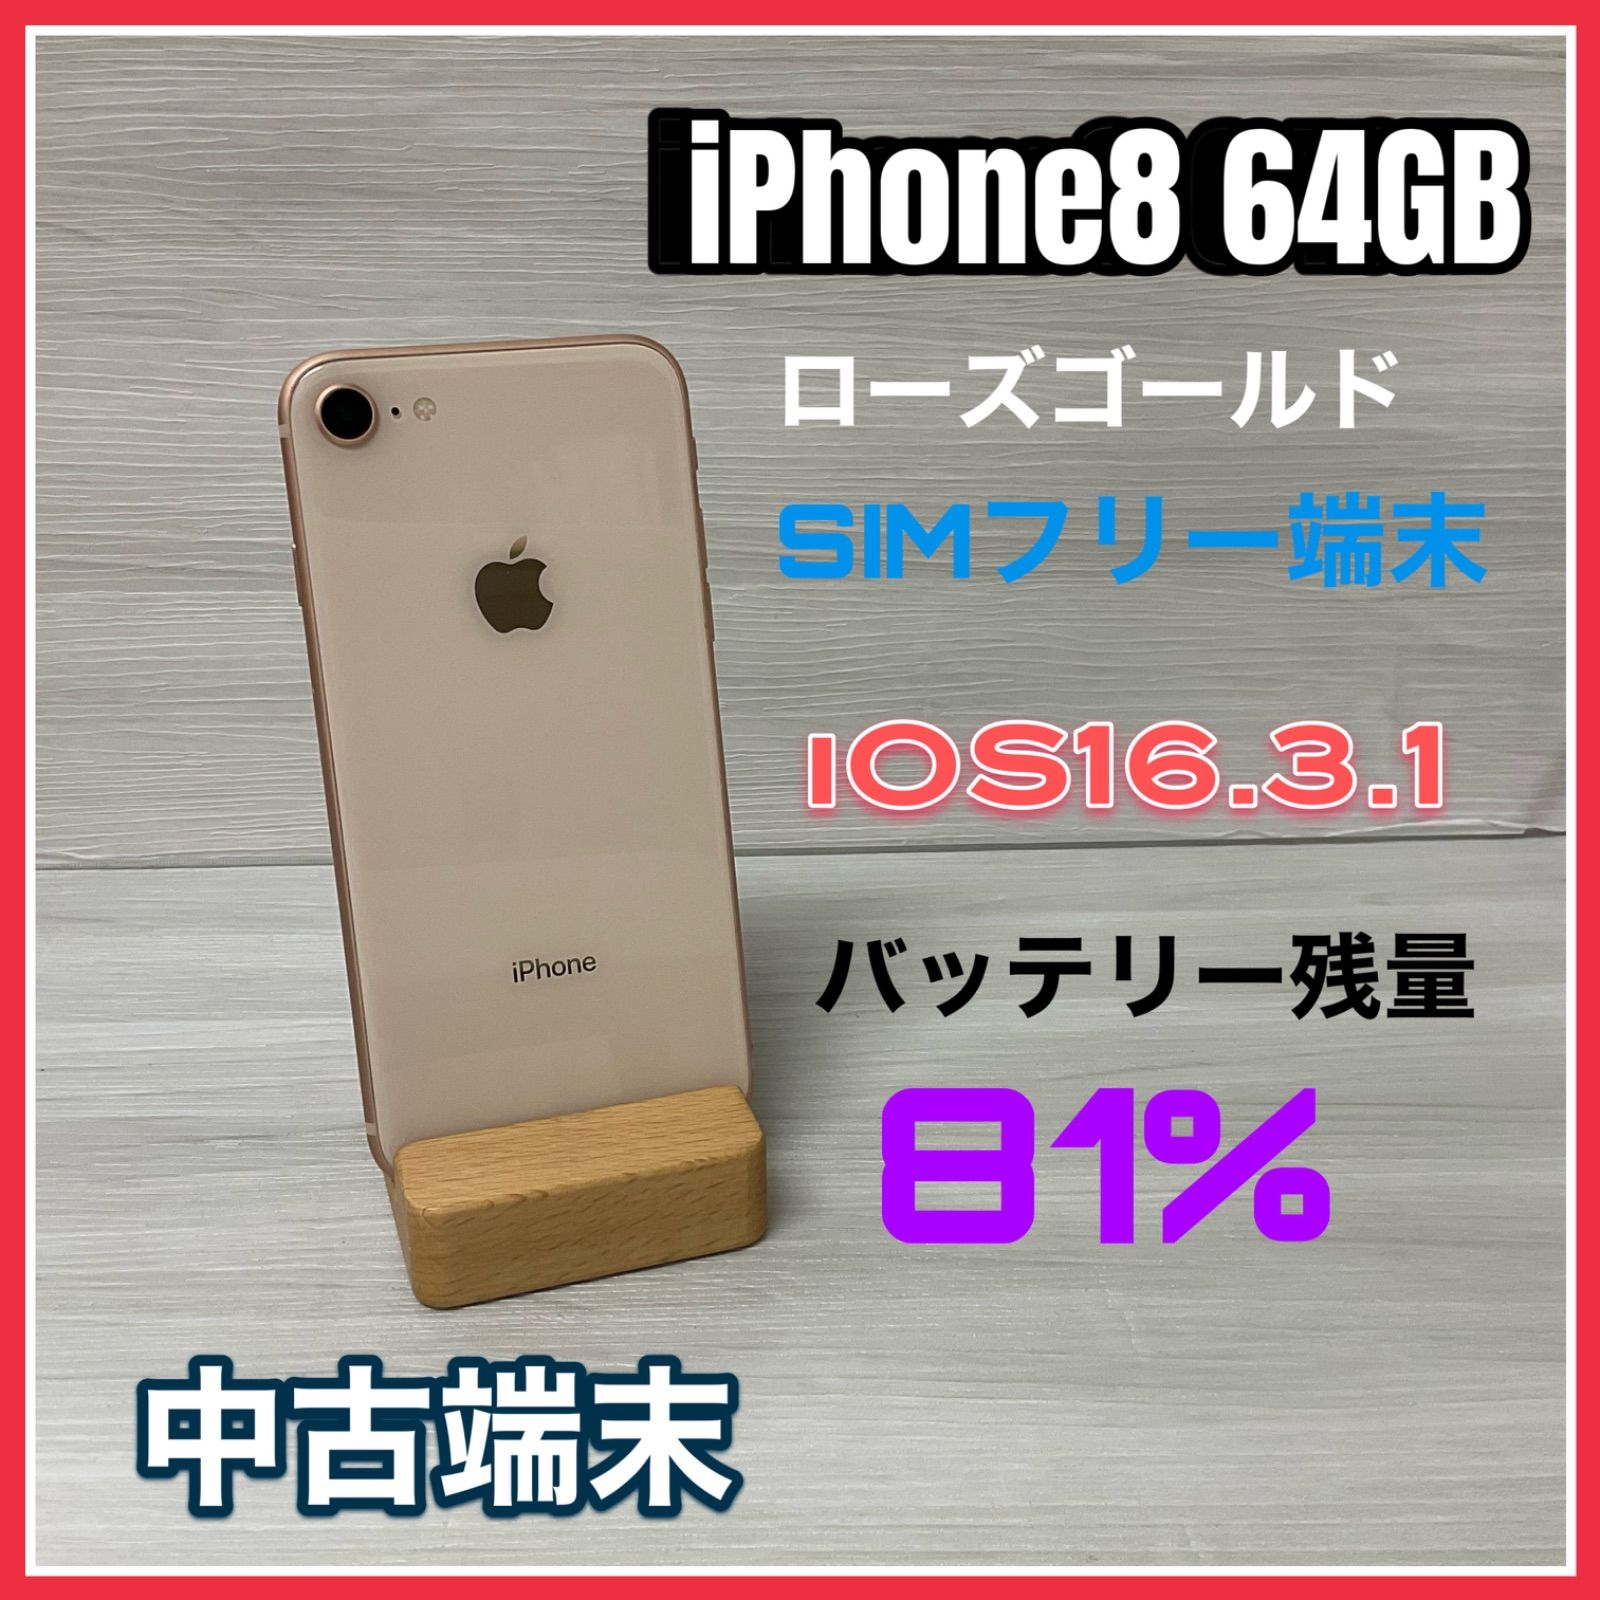 iPhone8 バッテリー97% 64GB キズなし ゴールド SIMロック解除